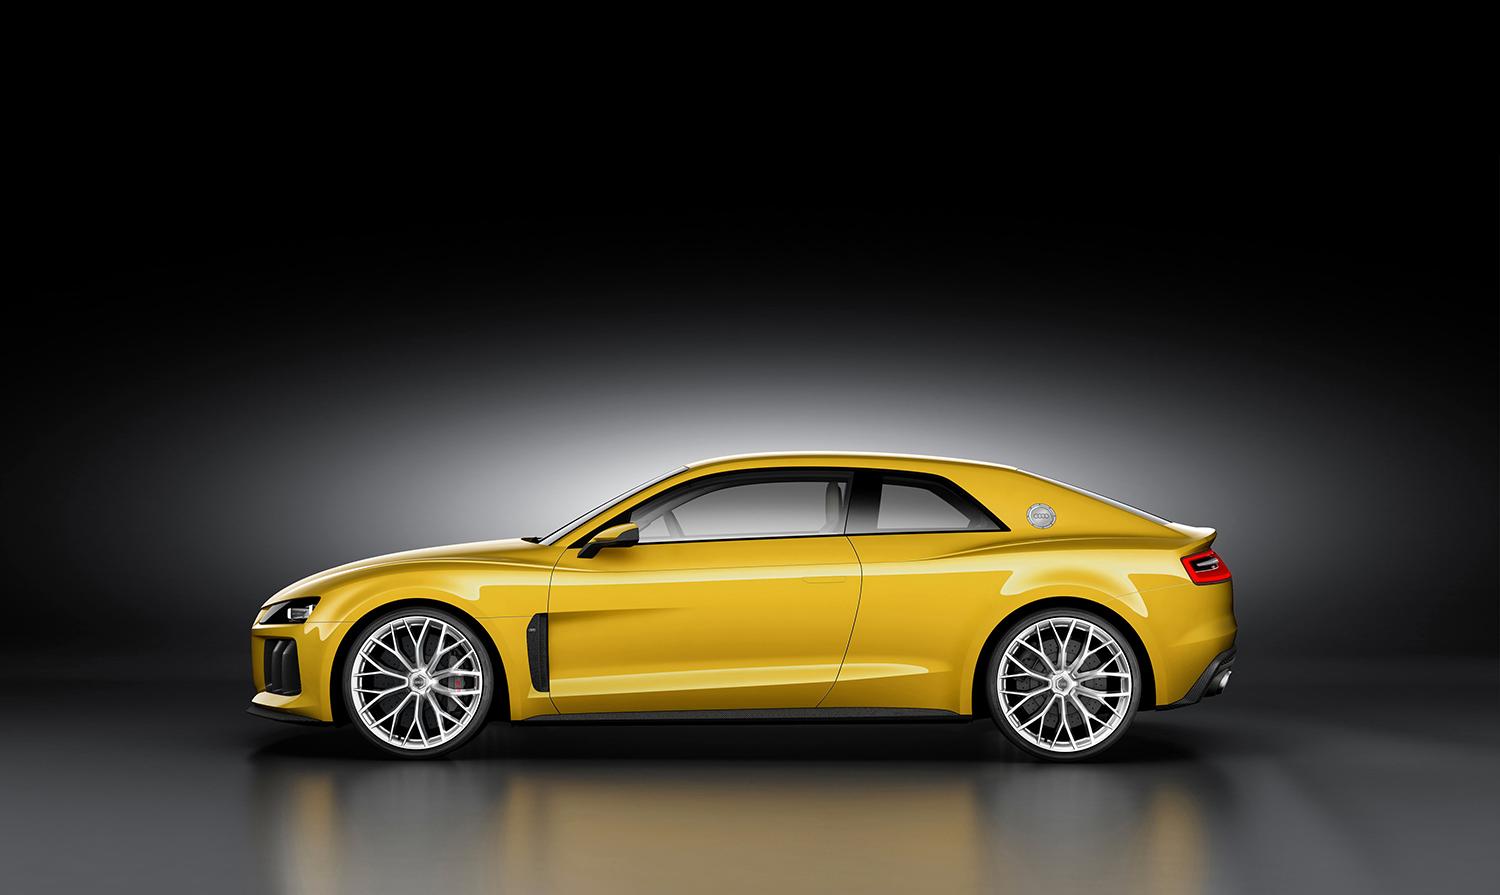 Så här såg Audis Sport Quattro-koncept ut som de visade upp 2015